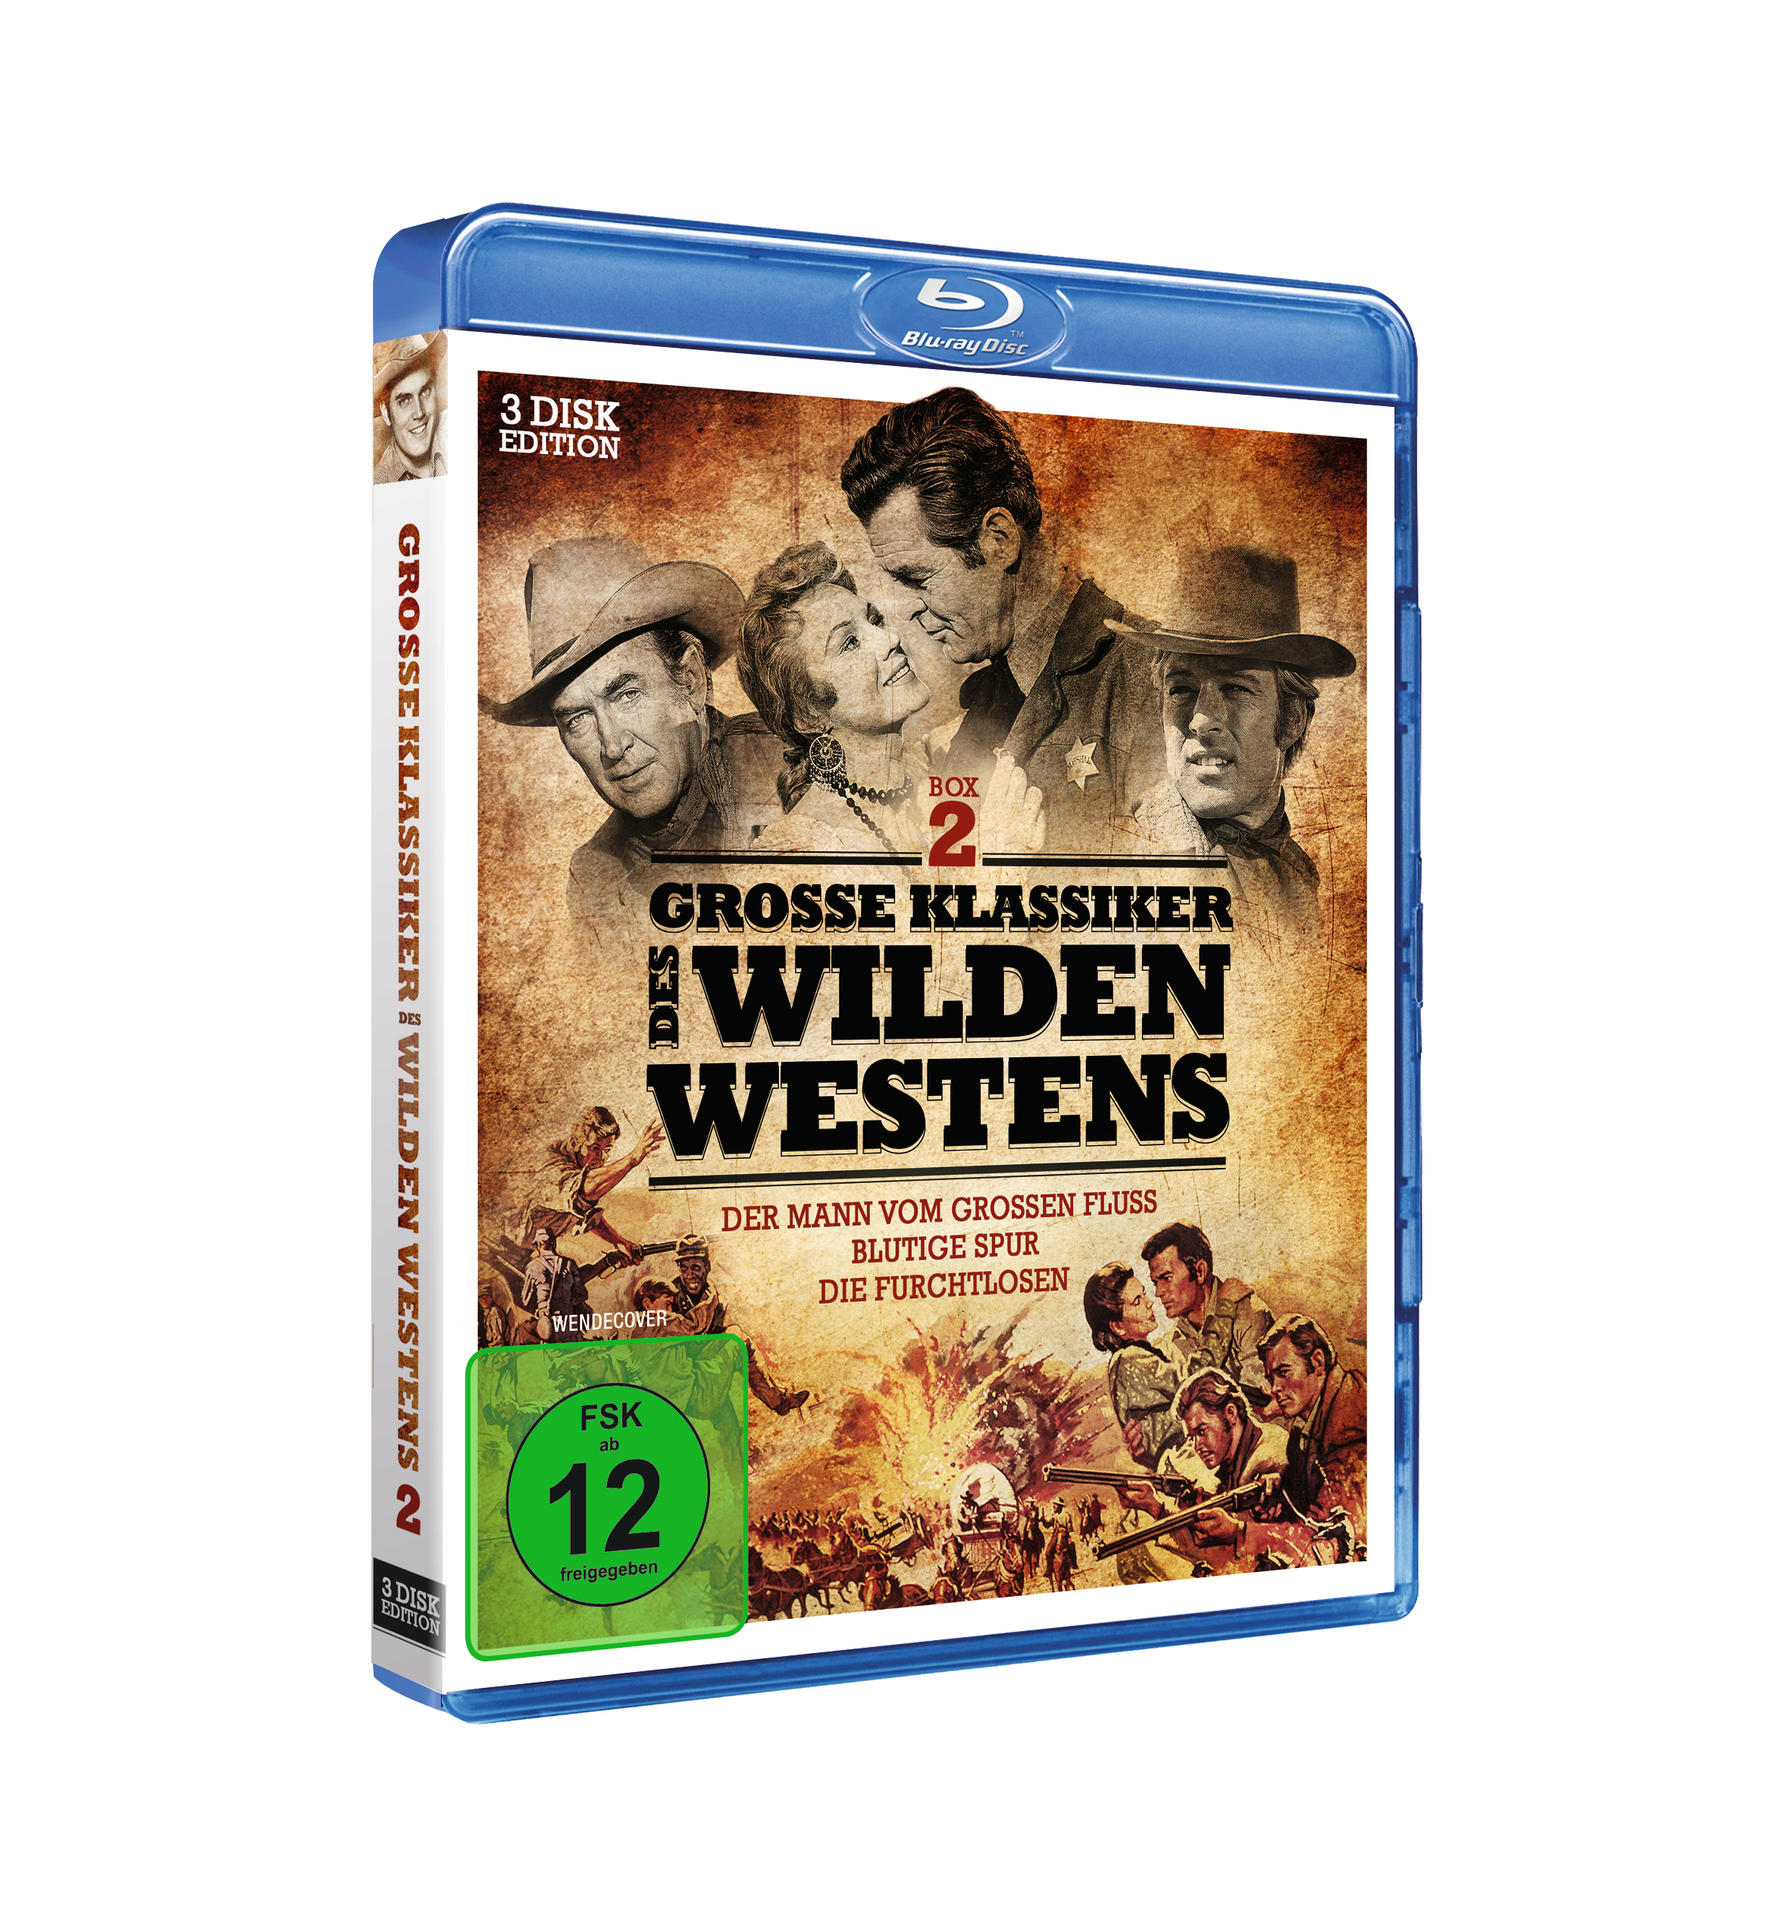 Klassiker Blu-ray Westens Große 2 des Wilden